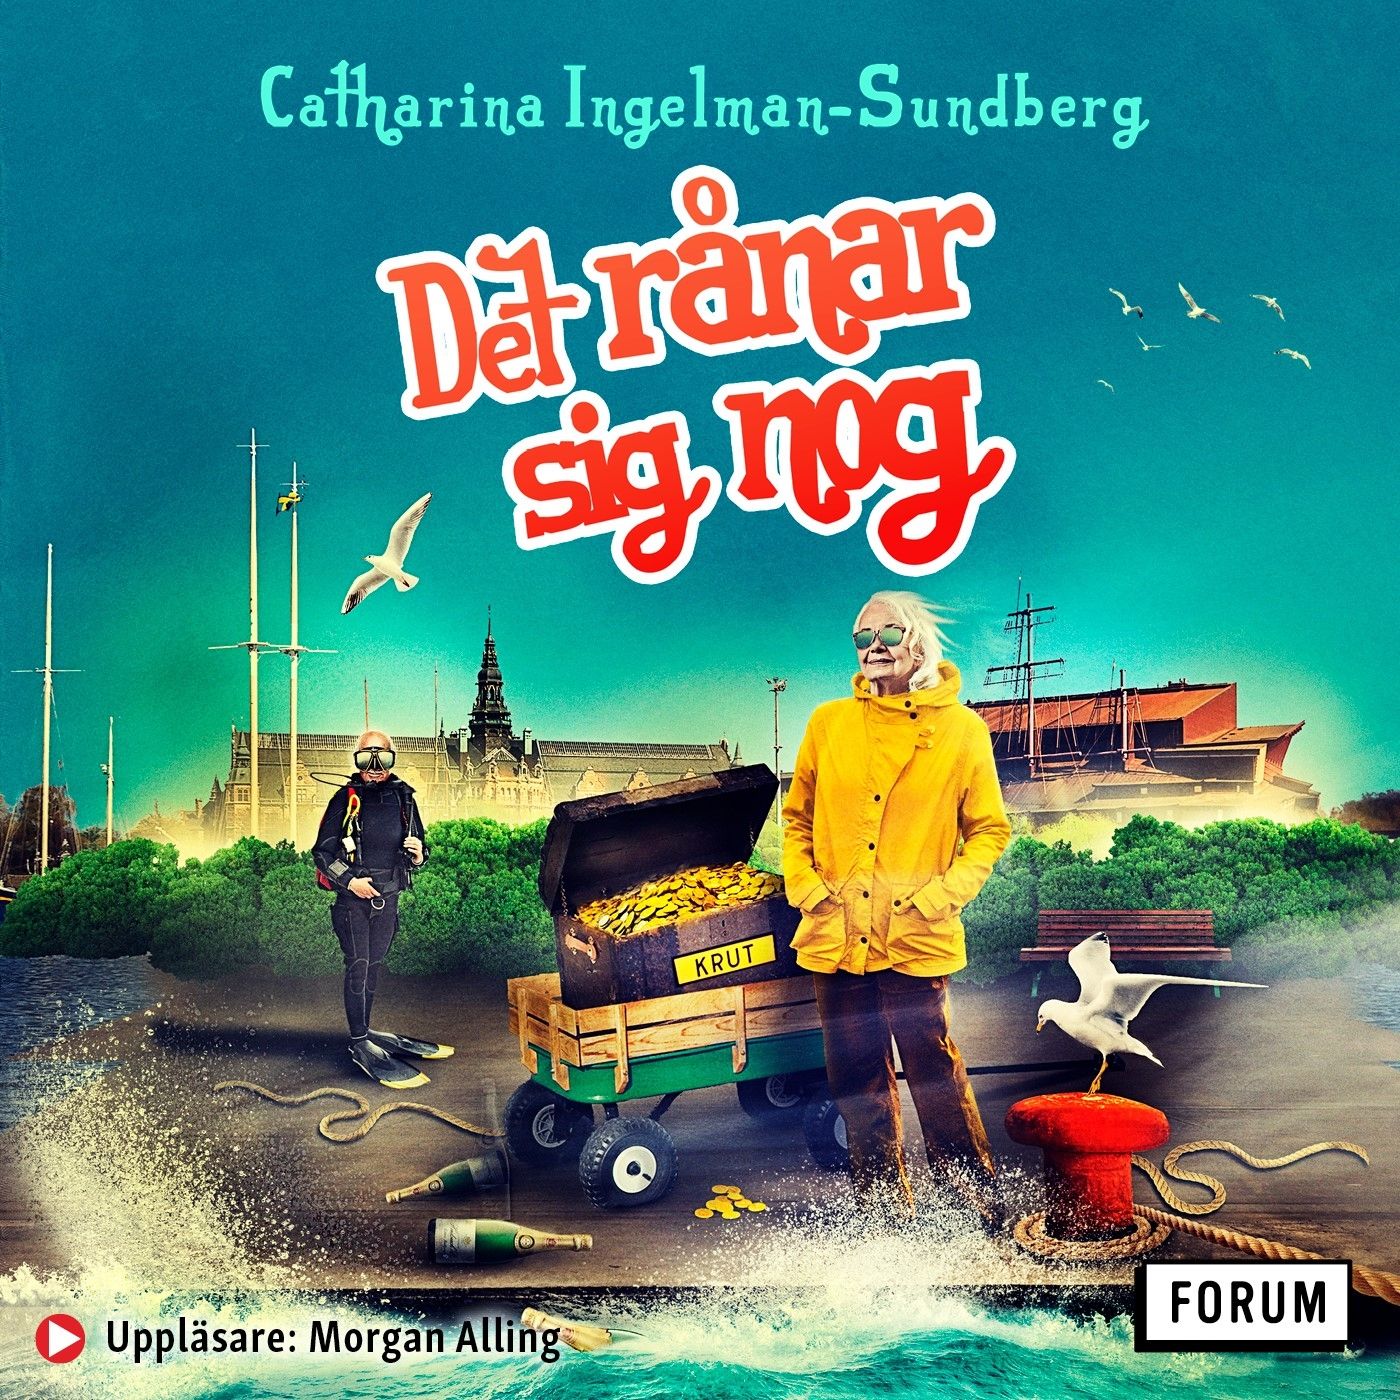 Det rånar sig nog, ljudbok av Catharina Ingelman-Sundberg